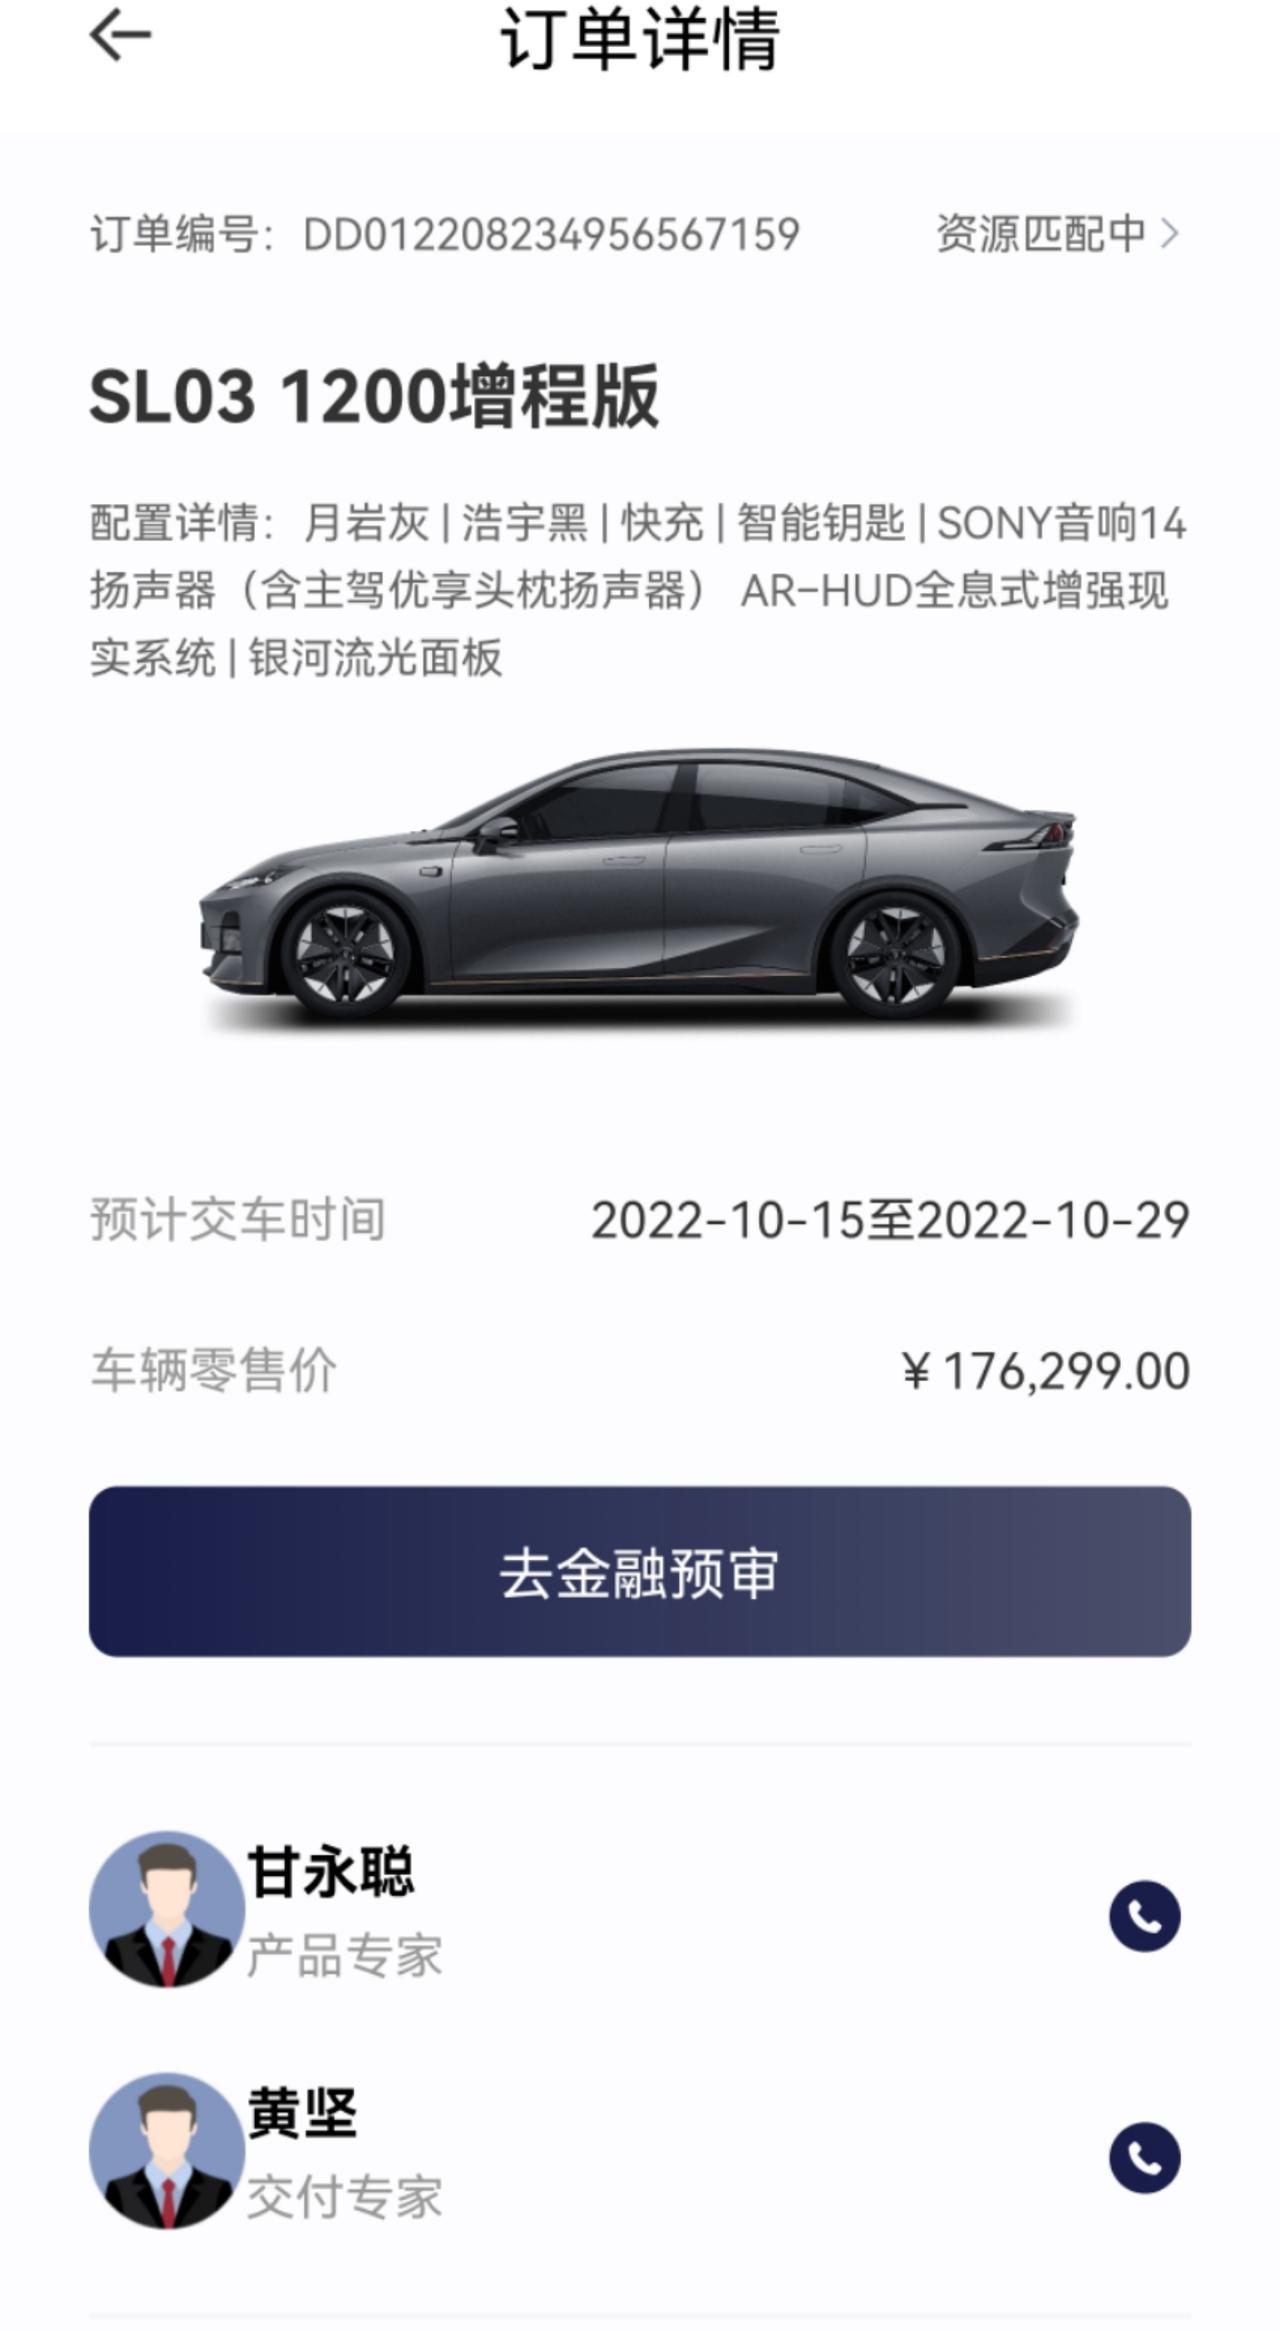 长安深蓝SL03 求助~重庆发票➕广西省提车➕广东省上牌及行驶。在哪个地区买商业险❓